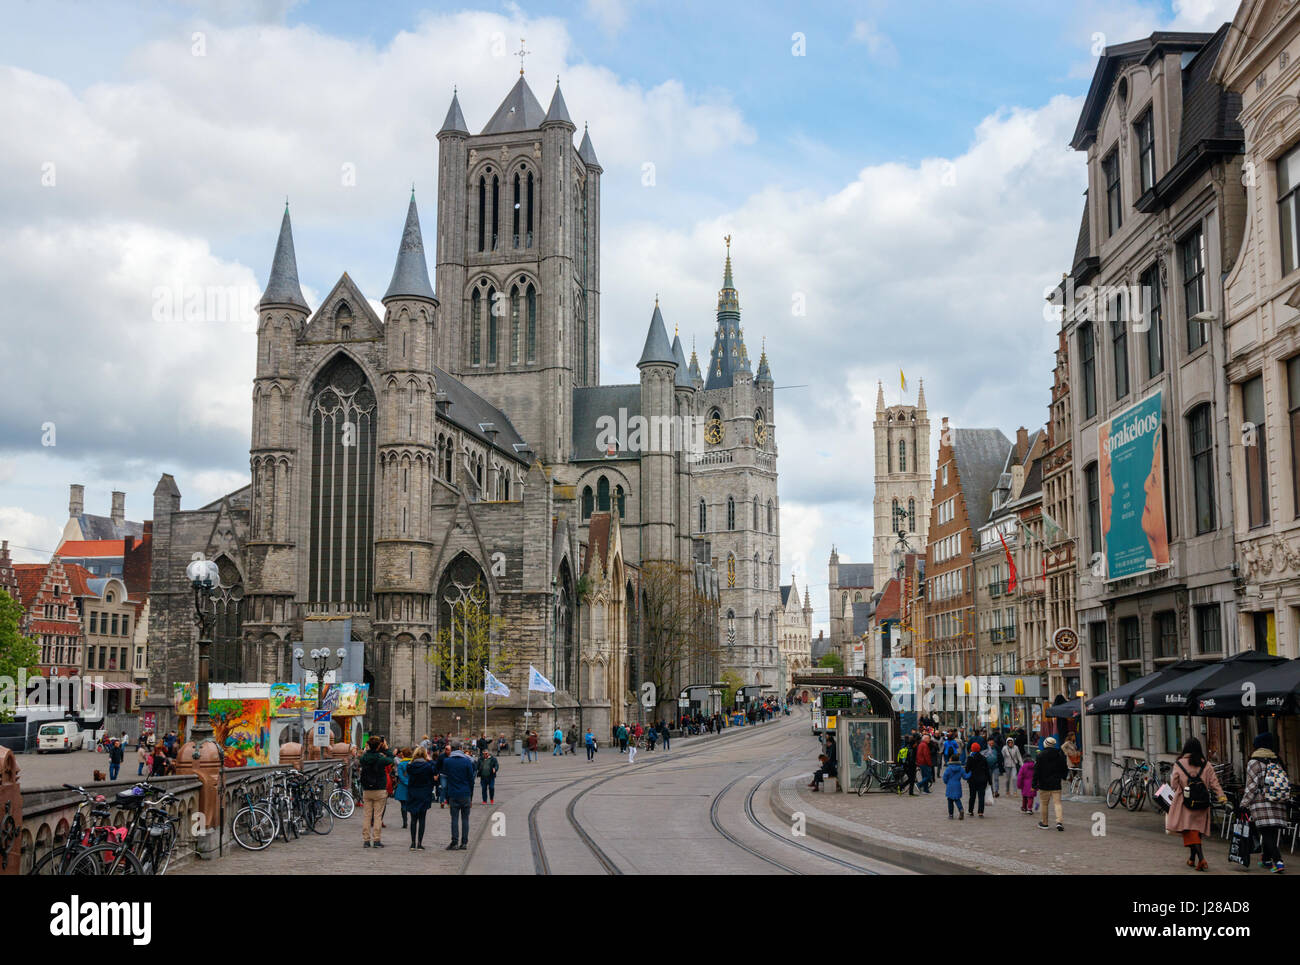 Vista del viejo centro de la ciudad de Gante con el Cataloniestraat Saint-Nicholas, Iglesia, campanario y la Catedral de Saint Bavo bajo un cielo nublado. Bélgica. Foto de stock